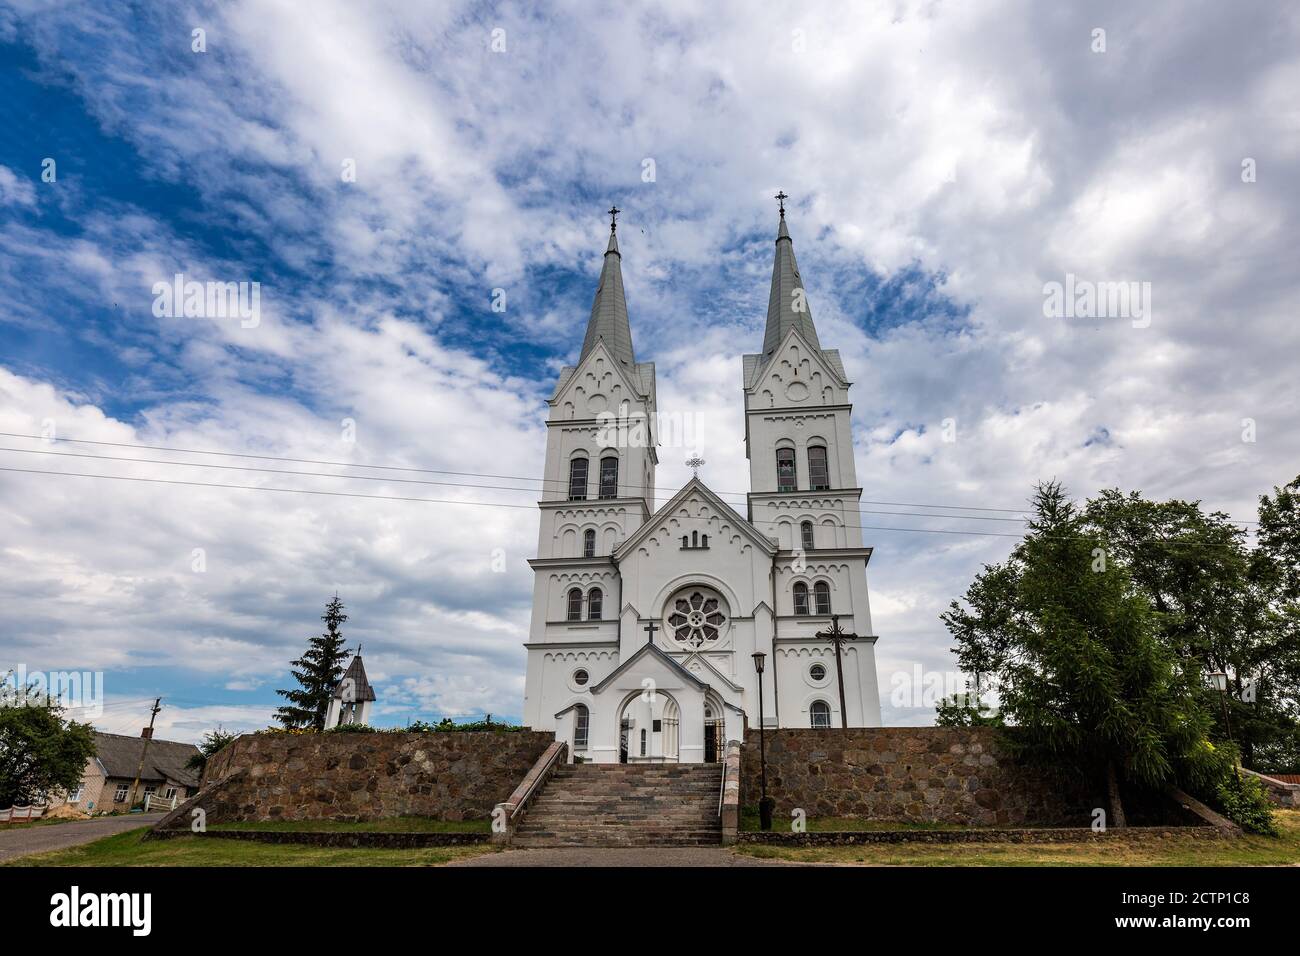 L'Église de la Divine Providence est une église catholique de la ville agricole de Slobodka Braslav, en Biélorussie. Un monument architectural dans la ne Banque D'Images